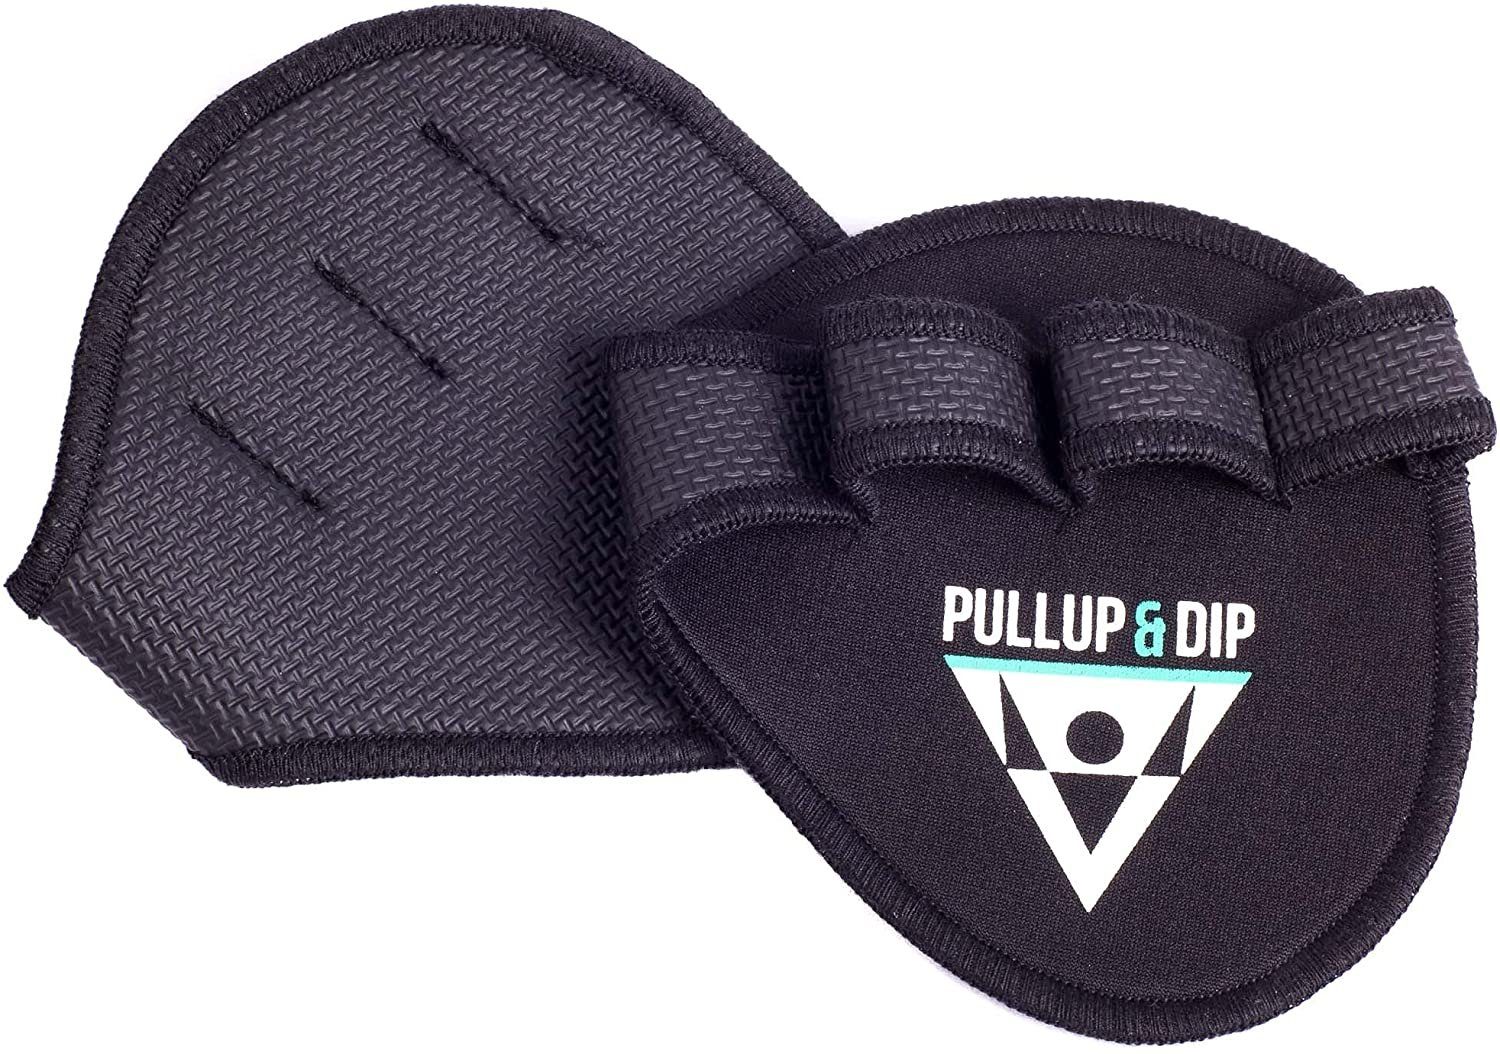 Pullup & Dip Trainingshandschuhe Griffpolster Griffpads für Klimmzüge, Fitness, Bodybuilding atmungsaktiv, Einheitsgröße, Unisex